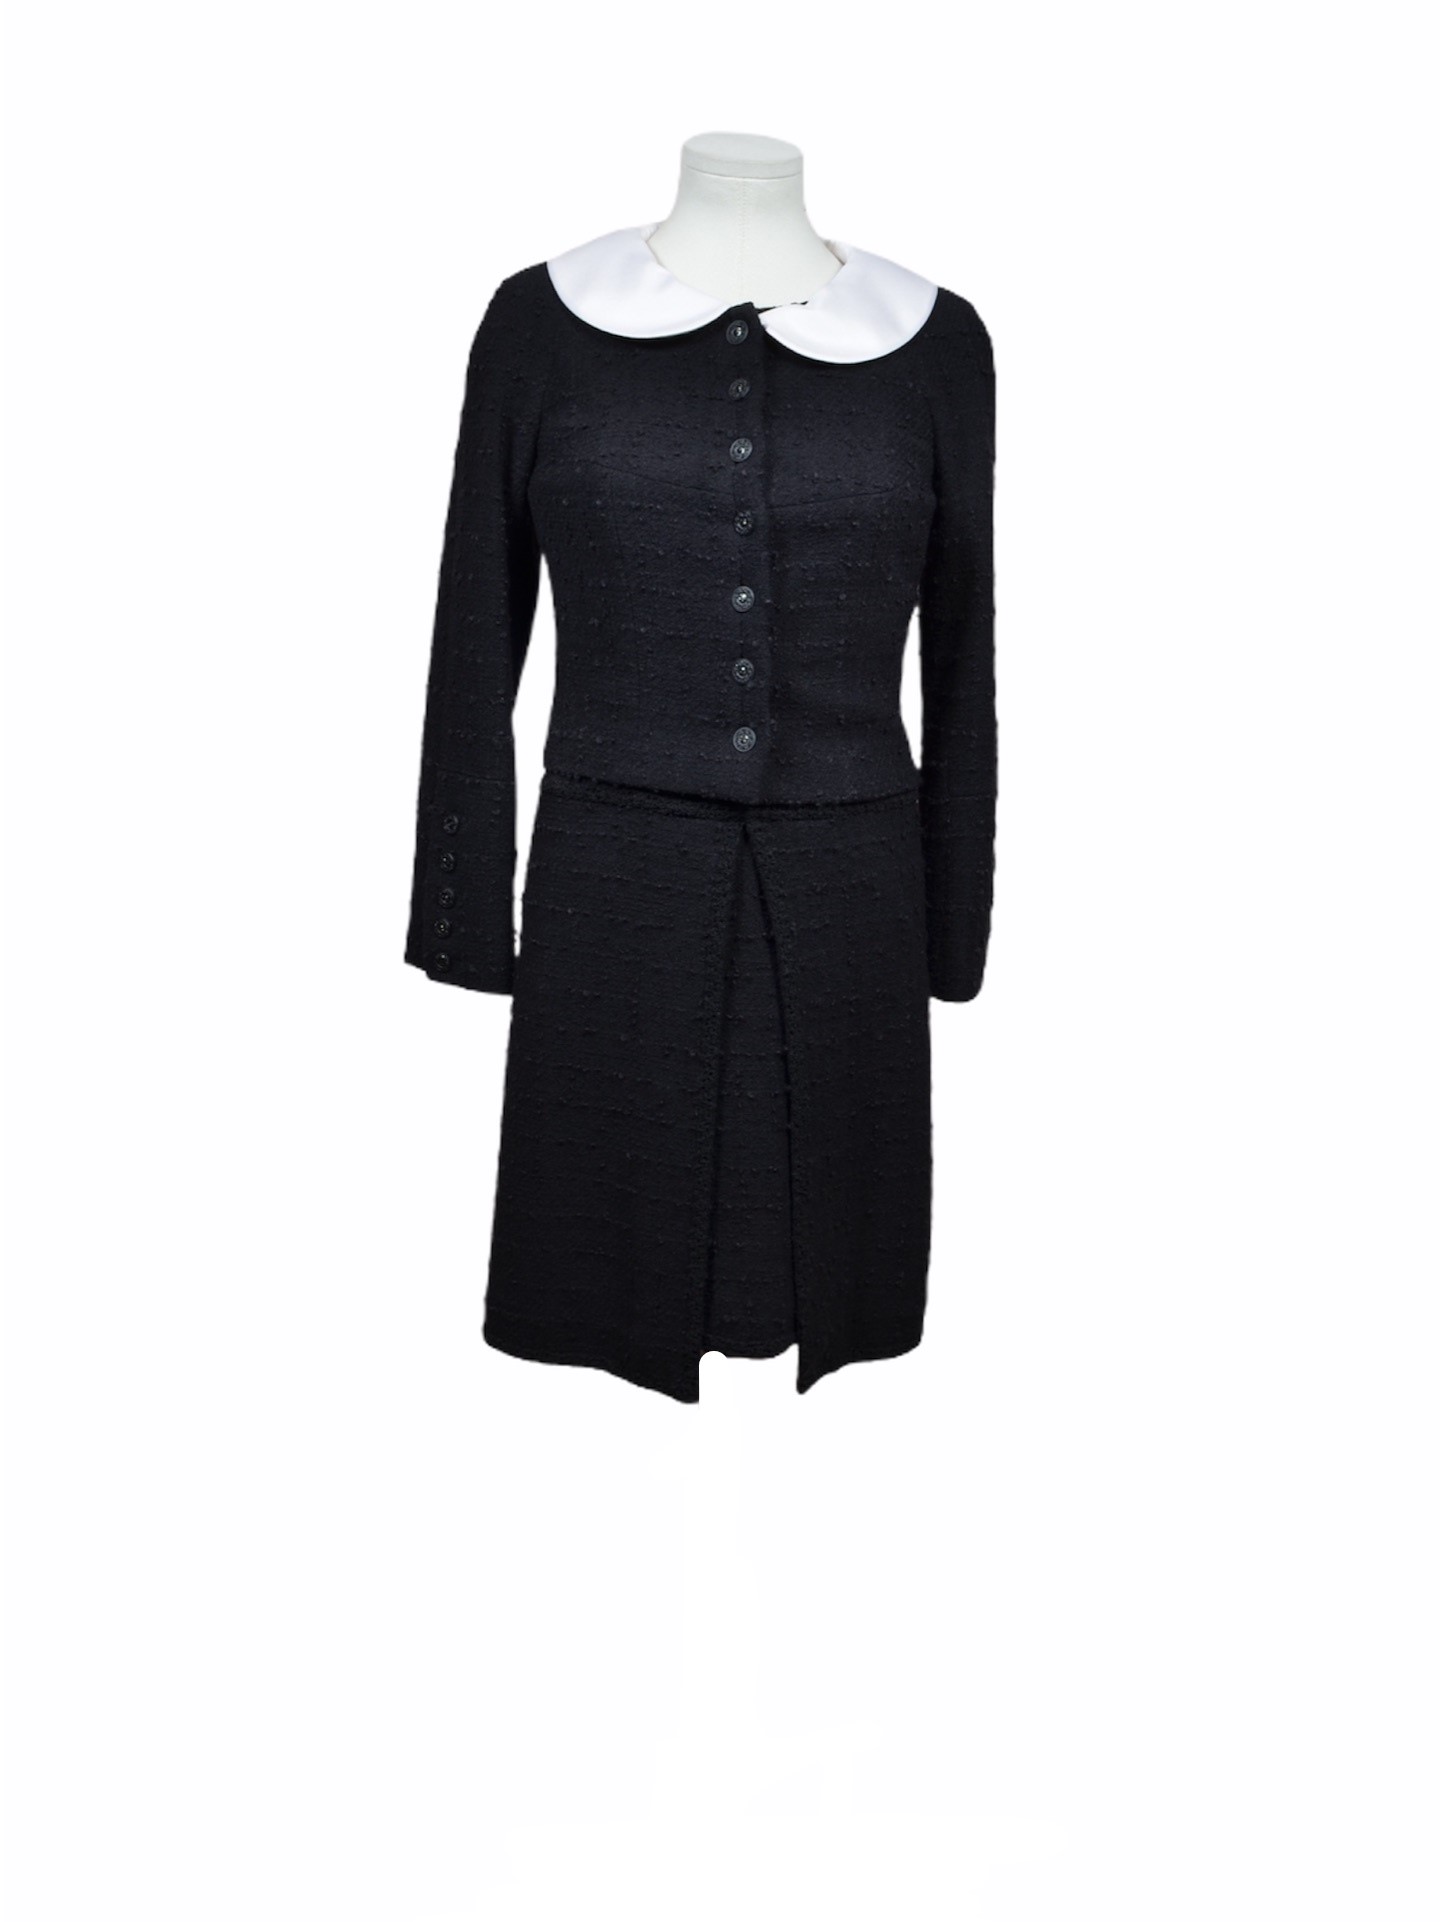 ewa lagan - Chanel Kostüm Kleid Jacke schwarz 36 Costume Suit wool Dress  Jackett Archives